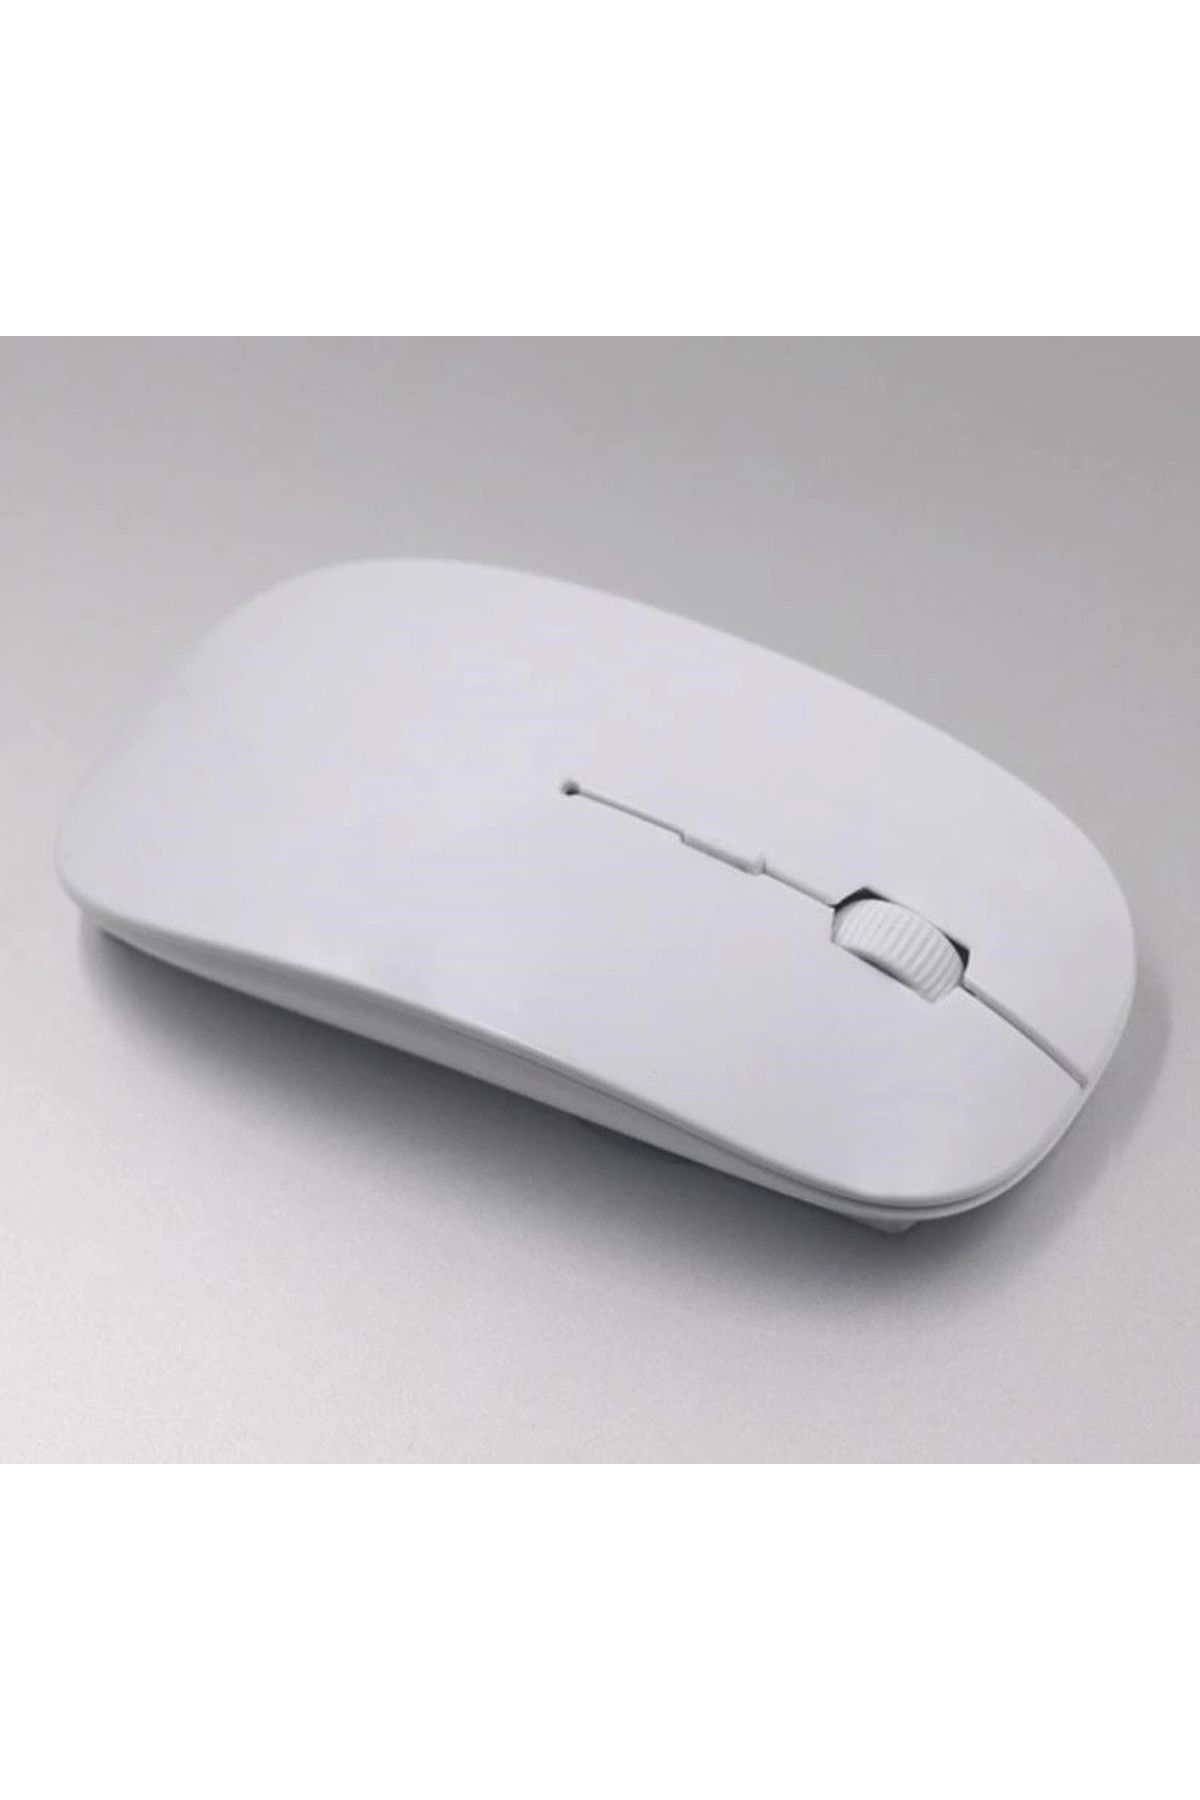 Epilons Ultra İnce Usb Bilgisayar Pc Dizüstü Masaüstü Kablosuz Mouse (beyaz)